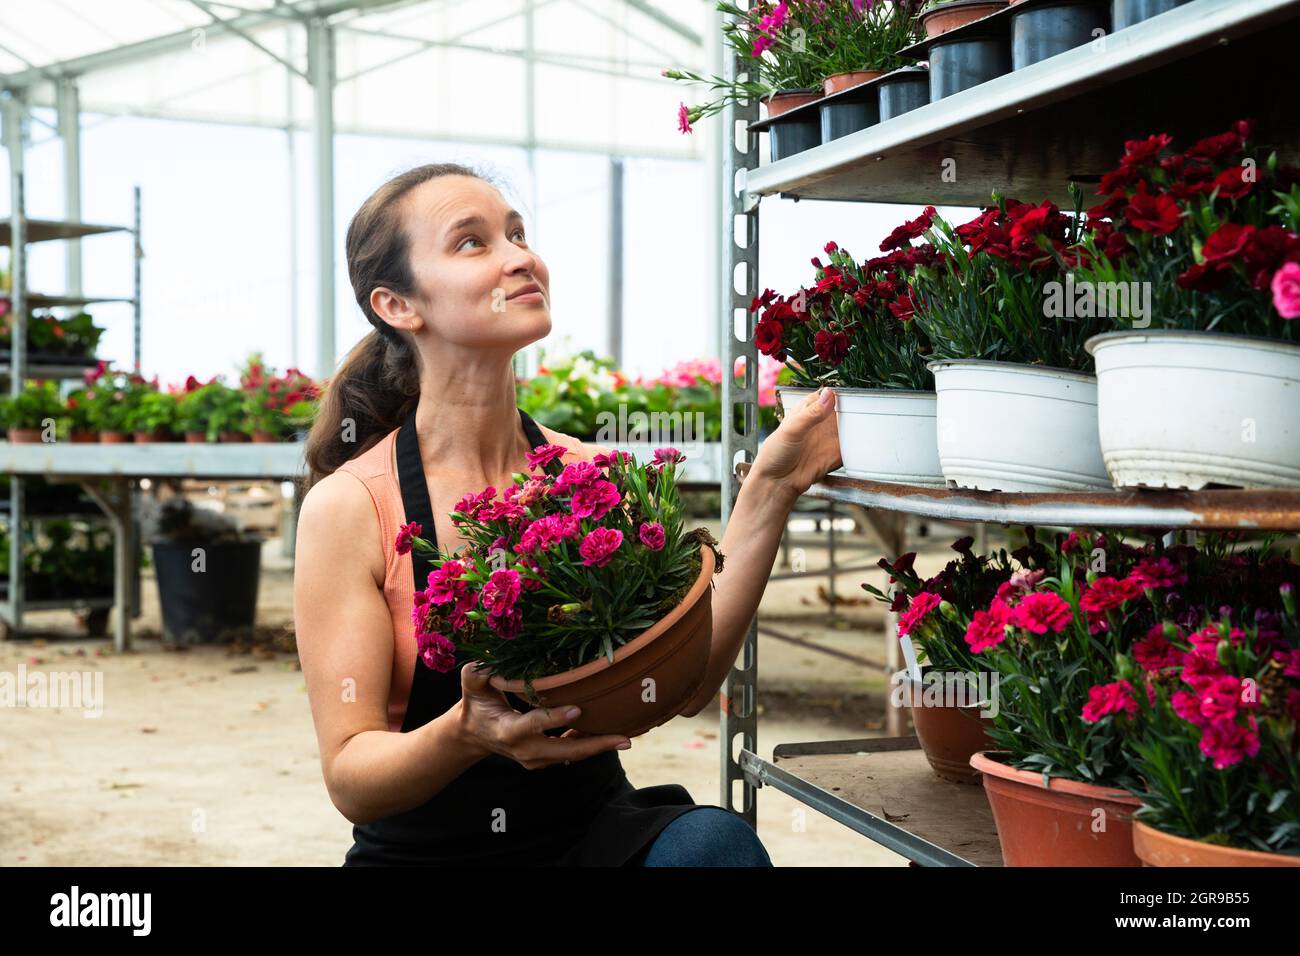 Female gardener demonstrating garden flowers in flowerpots Stock Photo